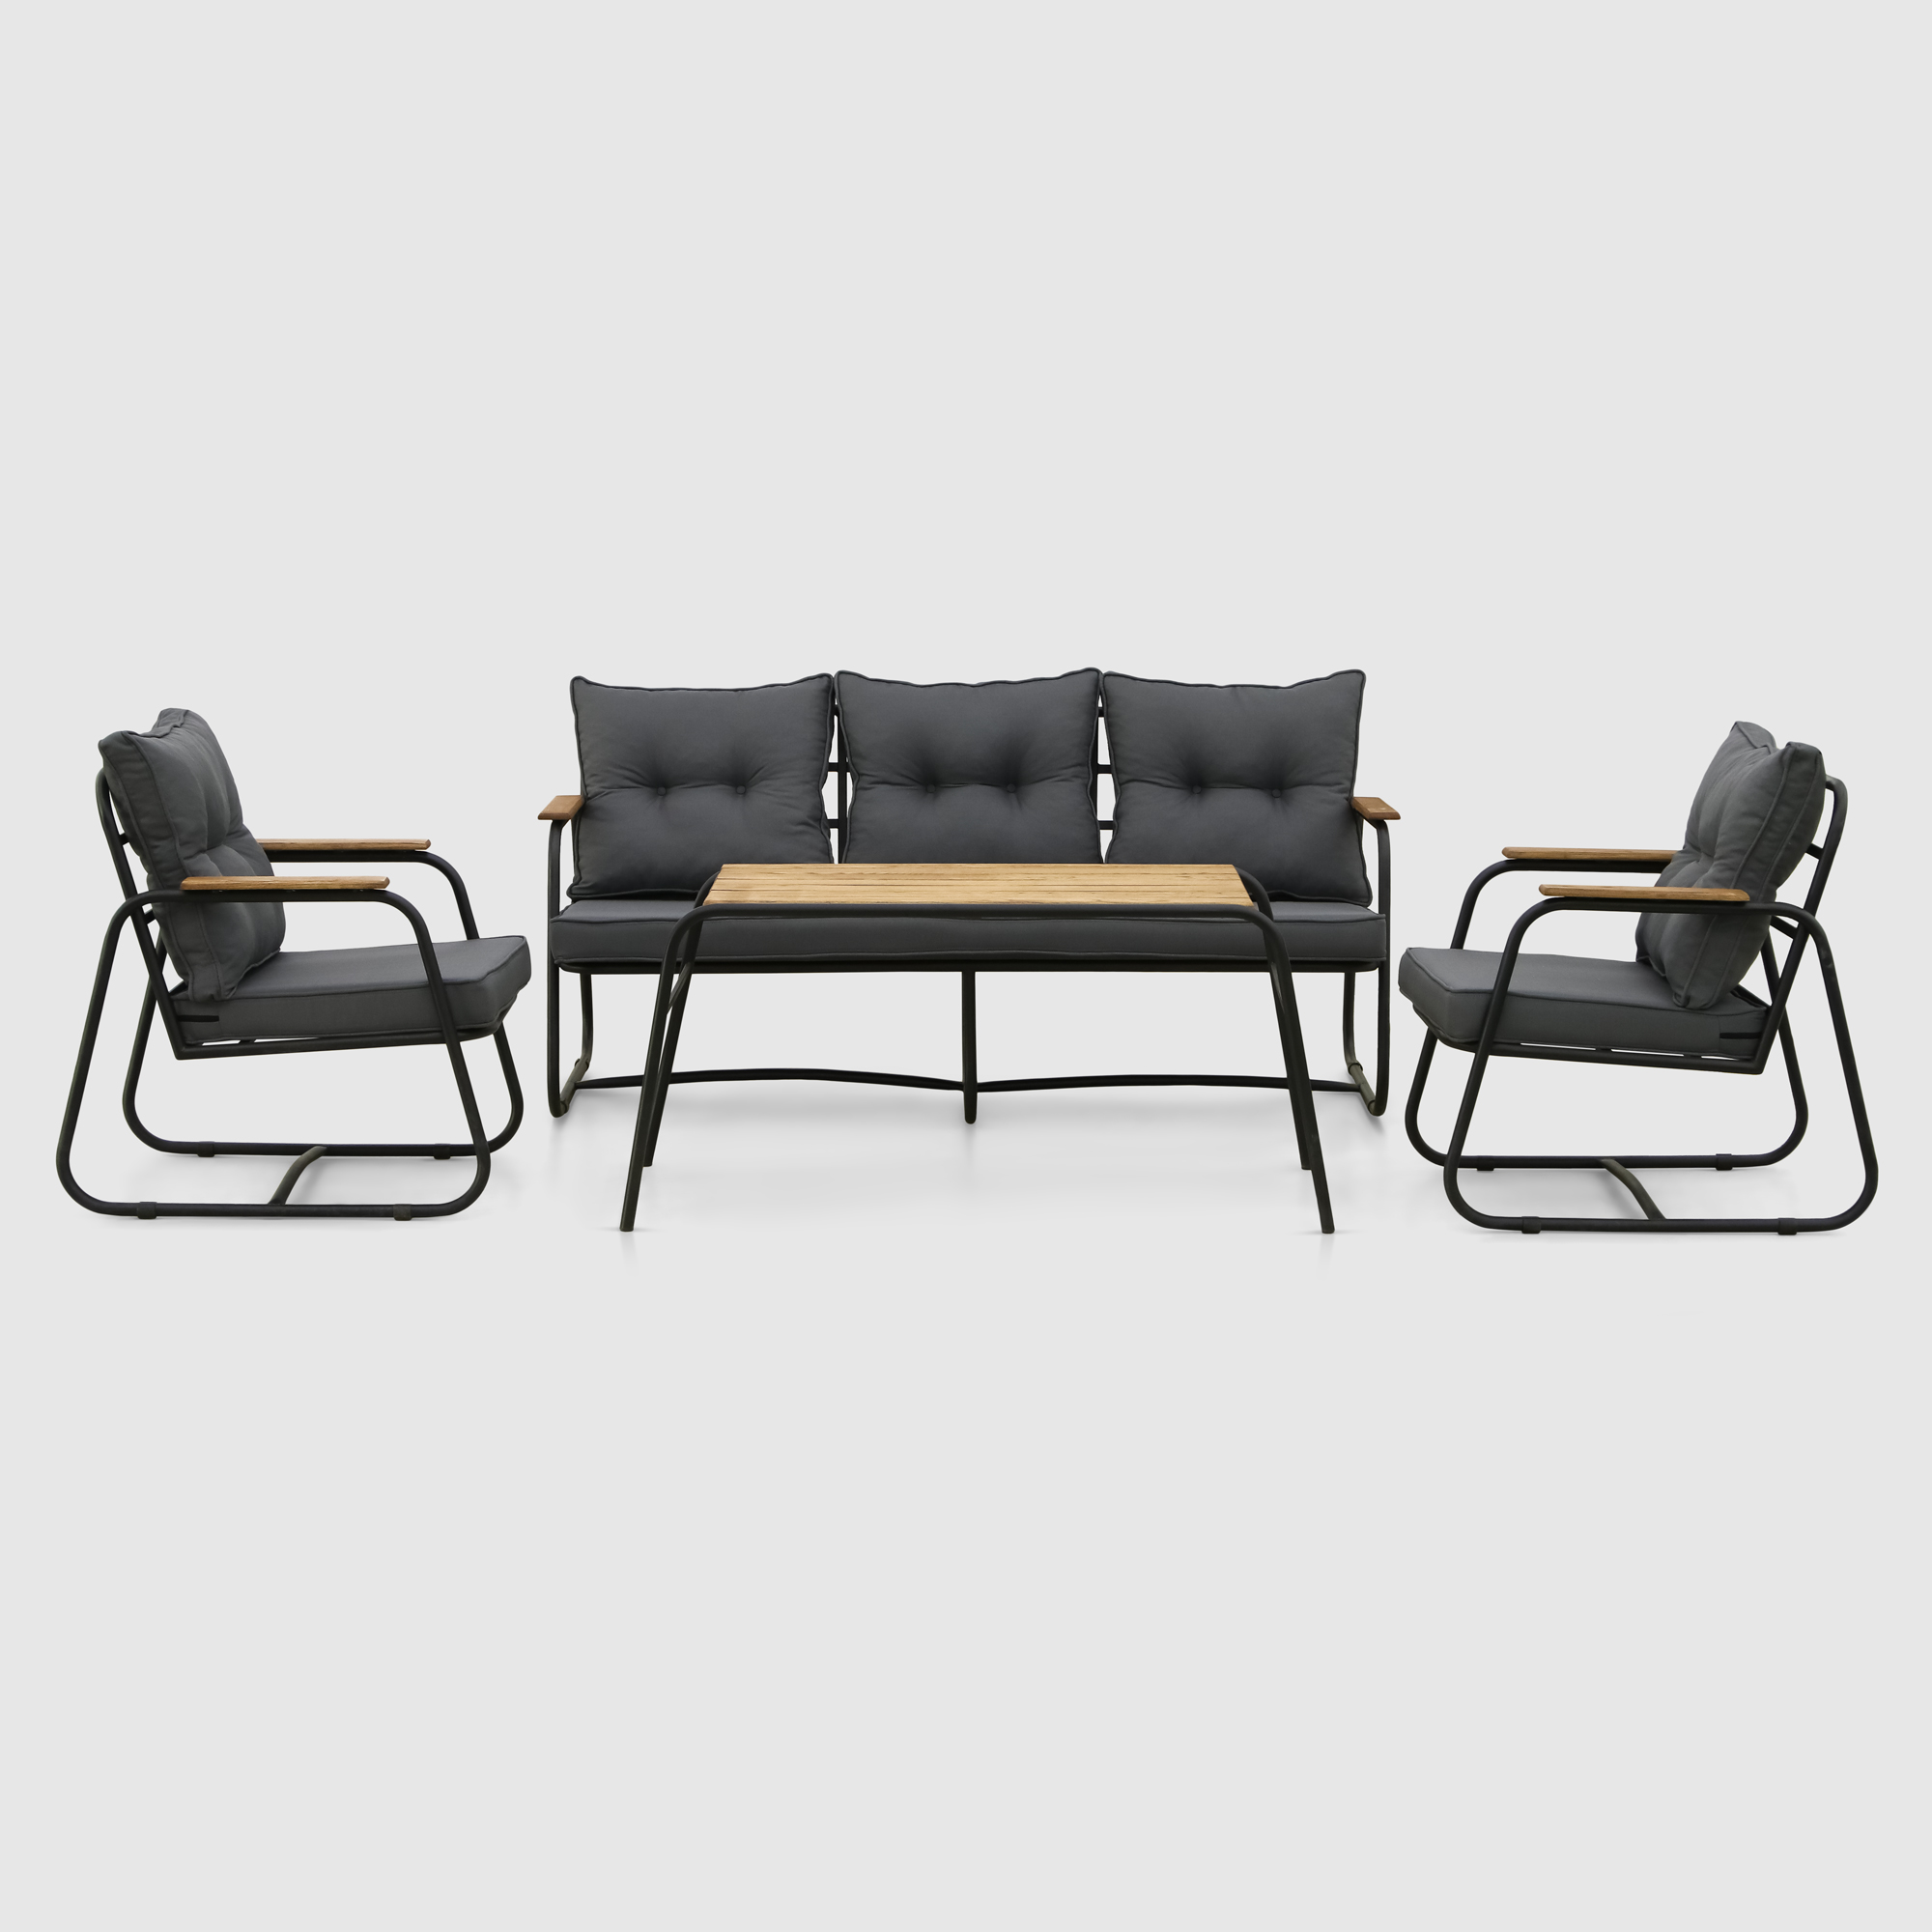 Комплект мебели Emek garden Sardinya 4 предмета, цвет черный, размер 120х73х80